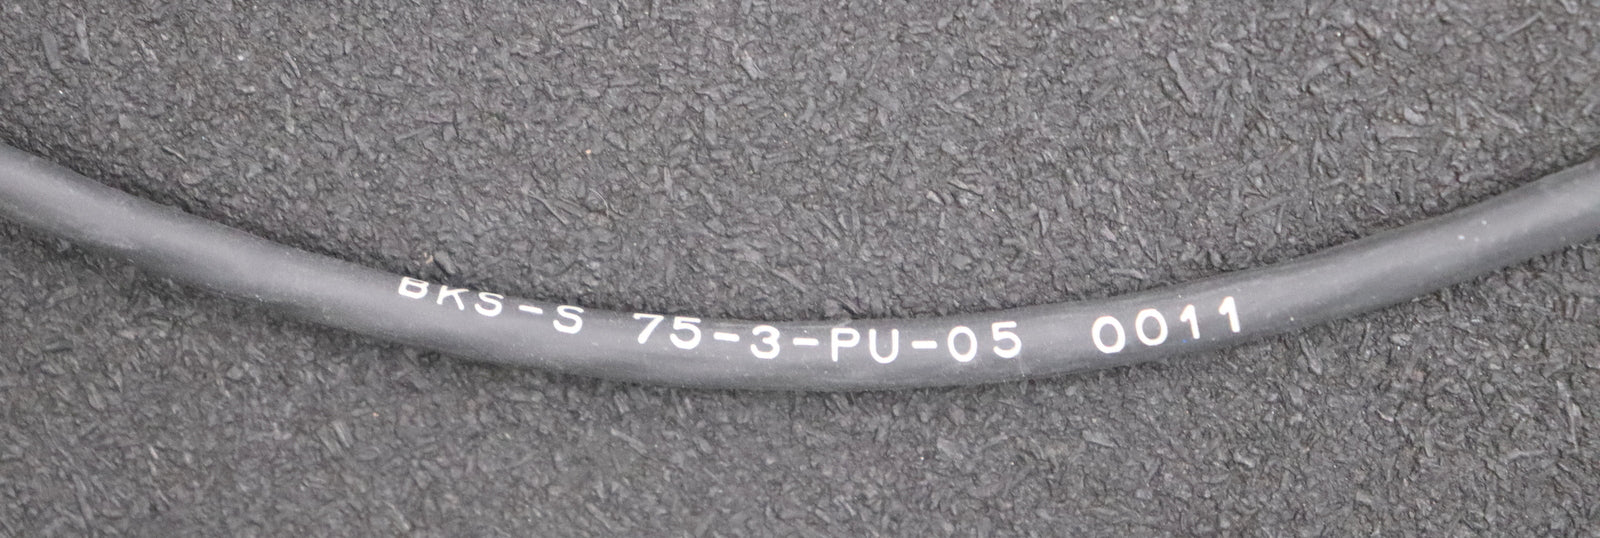 Bild des Artikels BALLUFF-Verbindungskabel-Typ-BKS-S-75-3-PU-05-Female-4-pin-anschluss-abgewinkelt